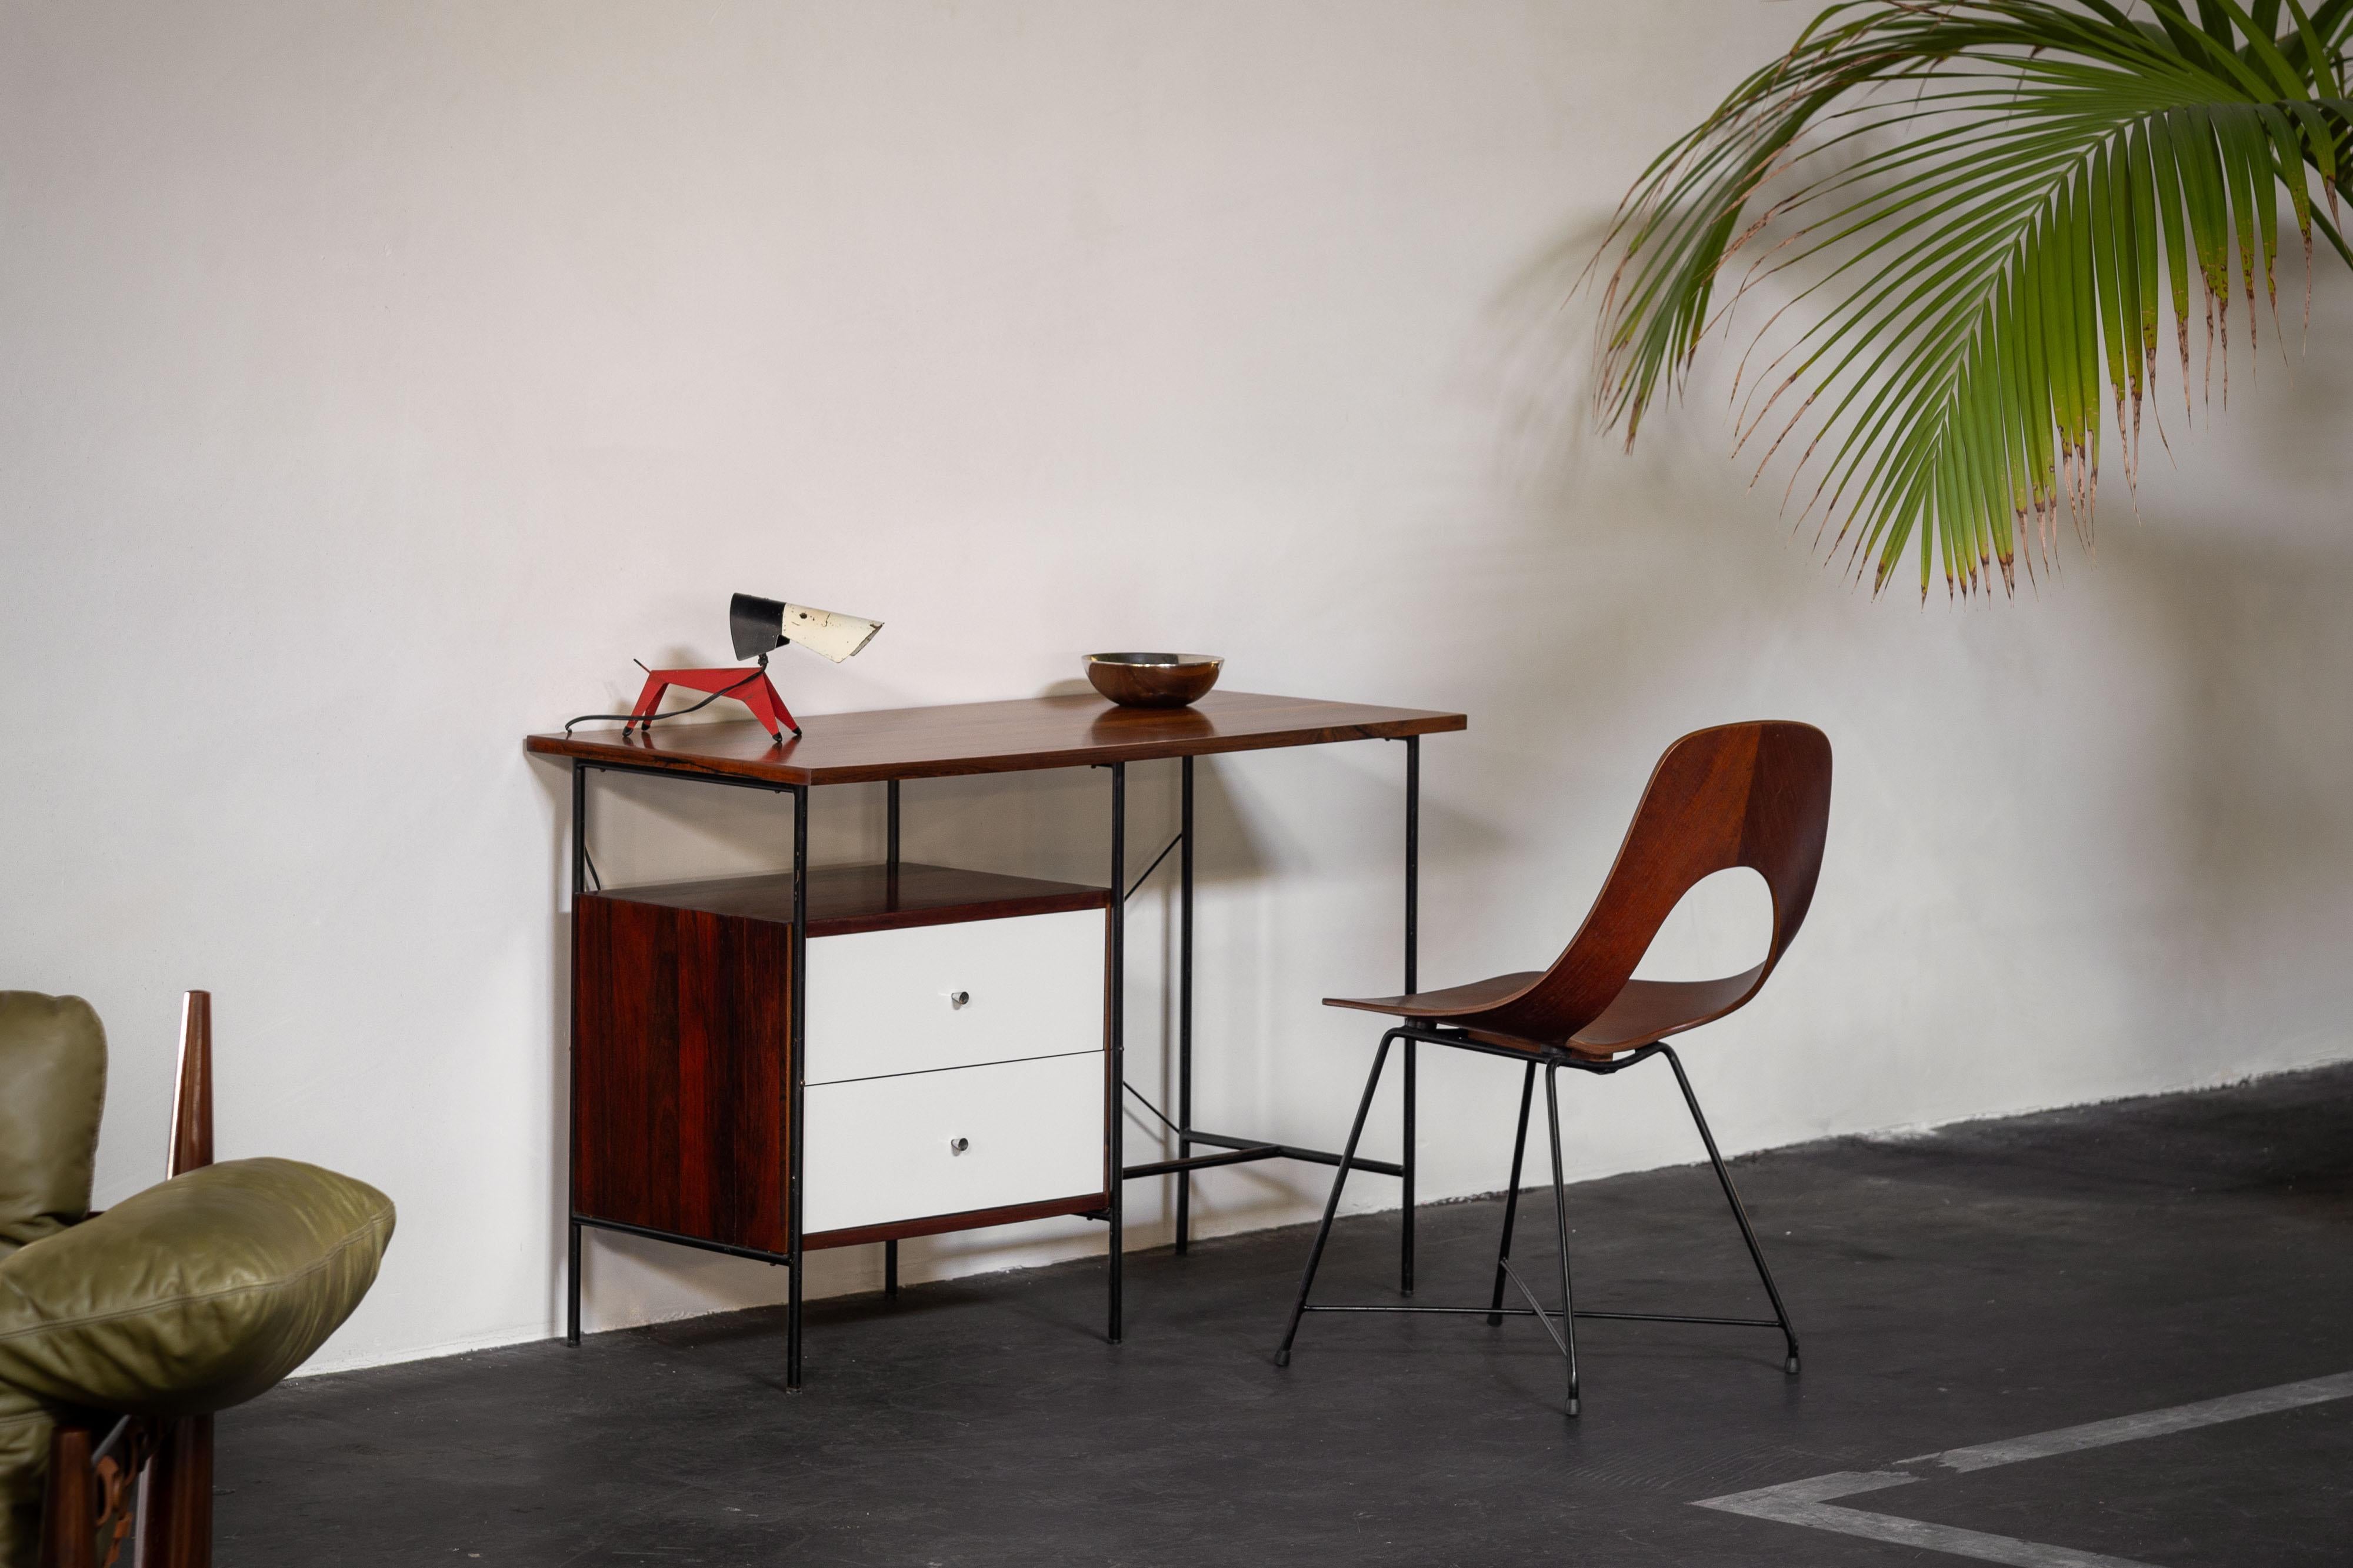 Très beau petit bureau minimaliste conçu par Geraldo de Barros et fabriqué par Unilabor, Brésil 1956. Le bureau est composé de trois parties principales. Le cadre en fer noir, le plateau en bois de rose et le meuble à tiroirs. Les façades des